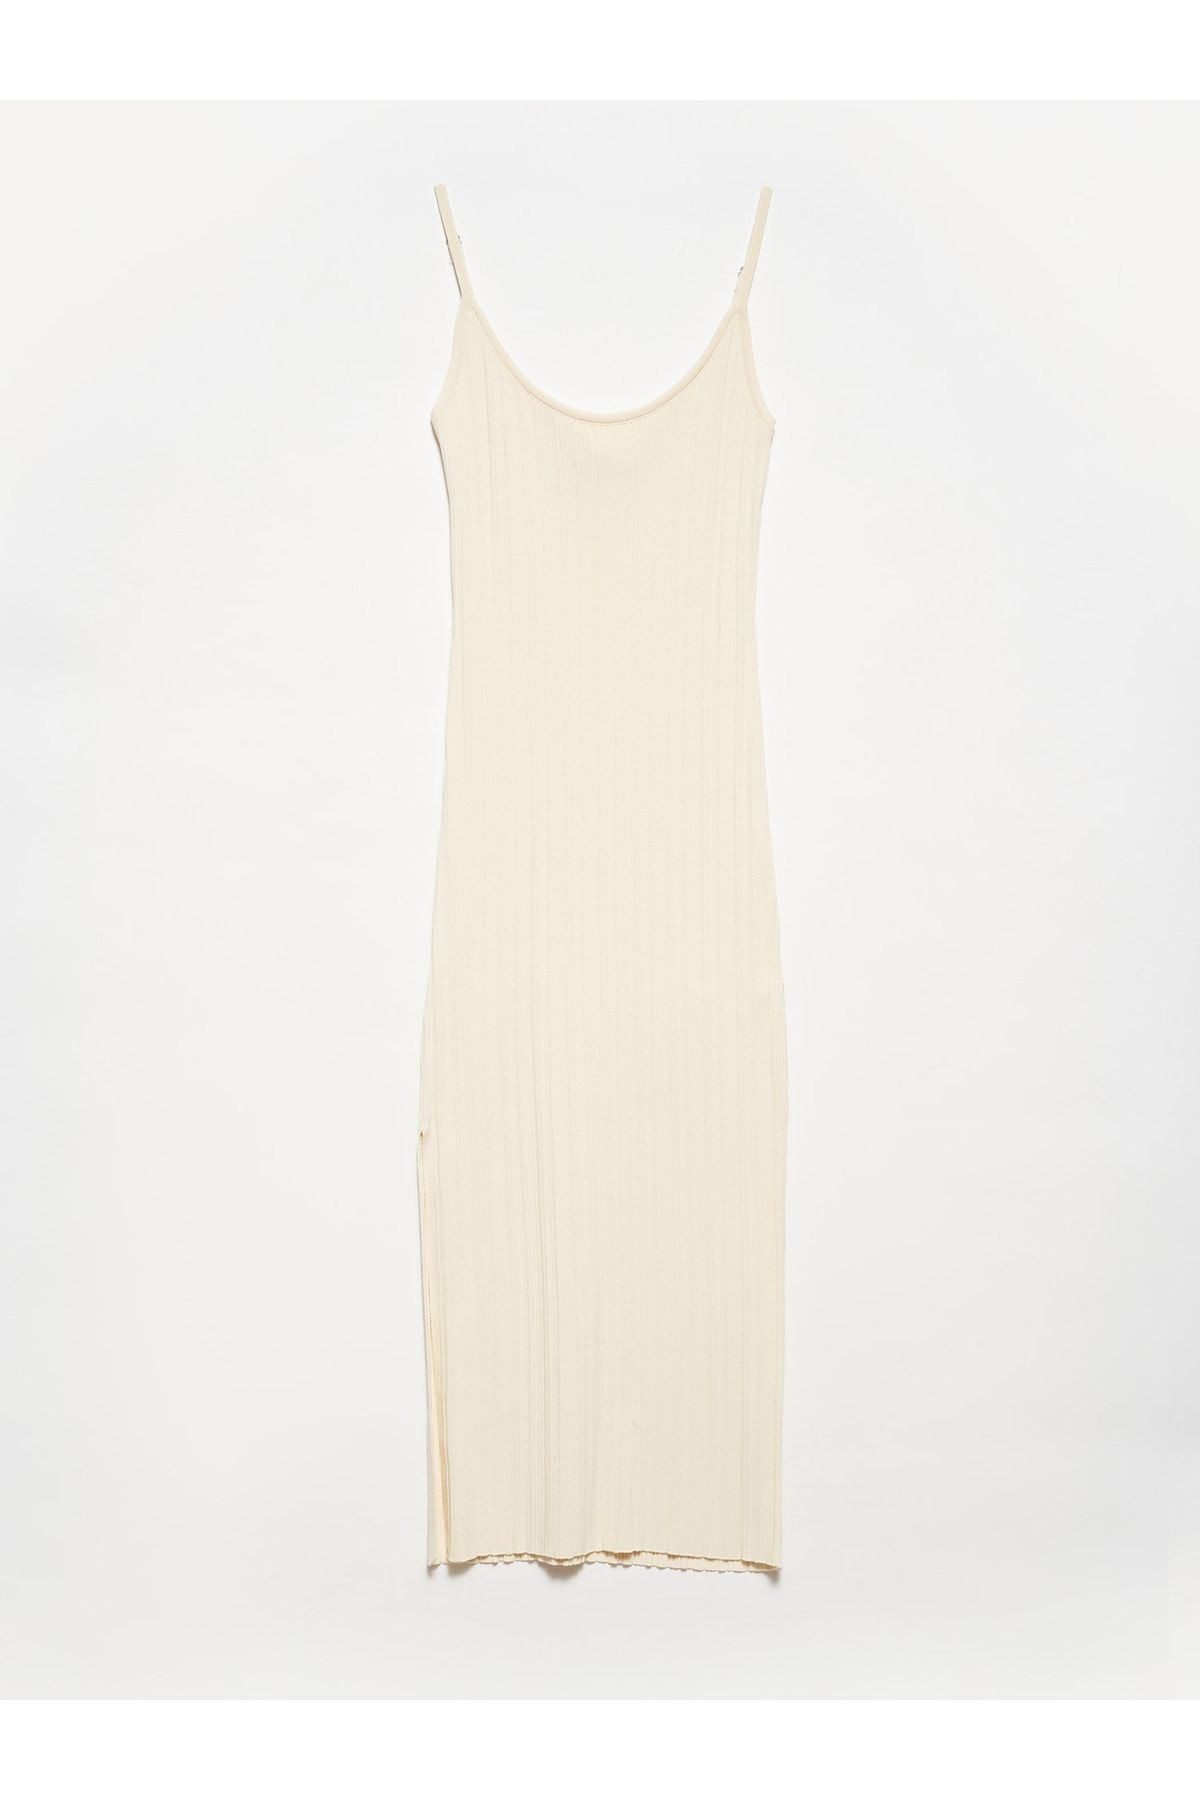 Dilvin 90139 Yırtmaçlı Askılı Triko Elbise-Natural